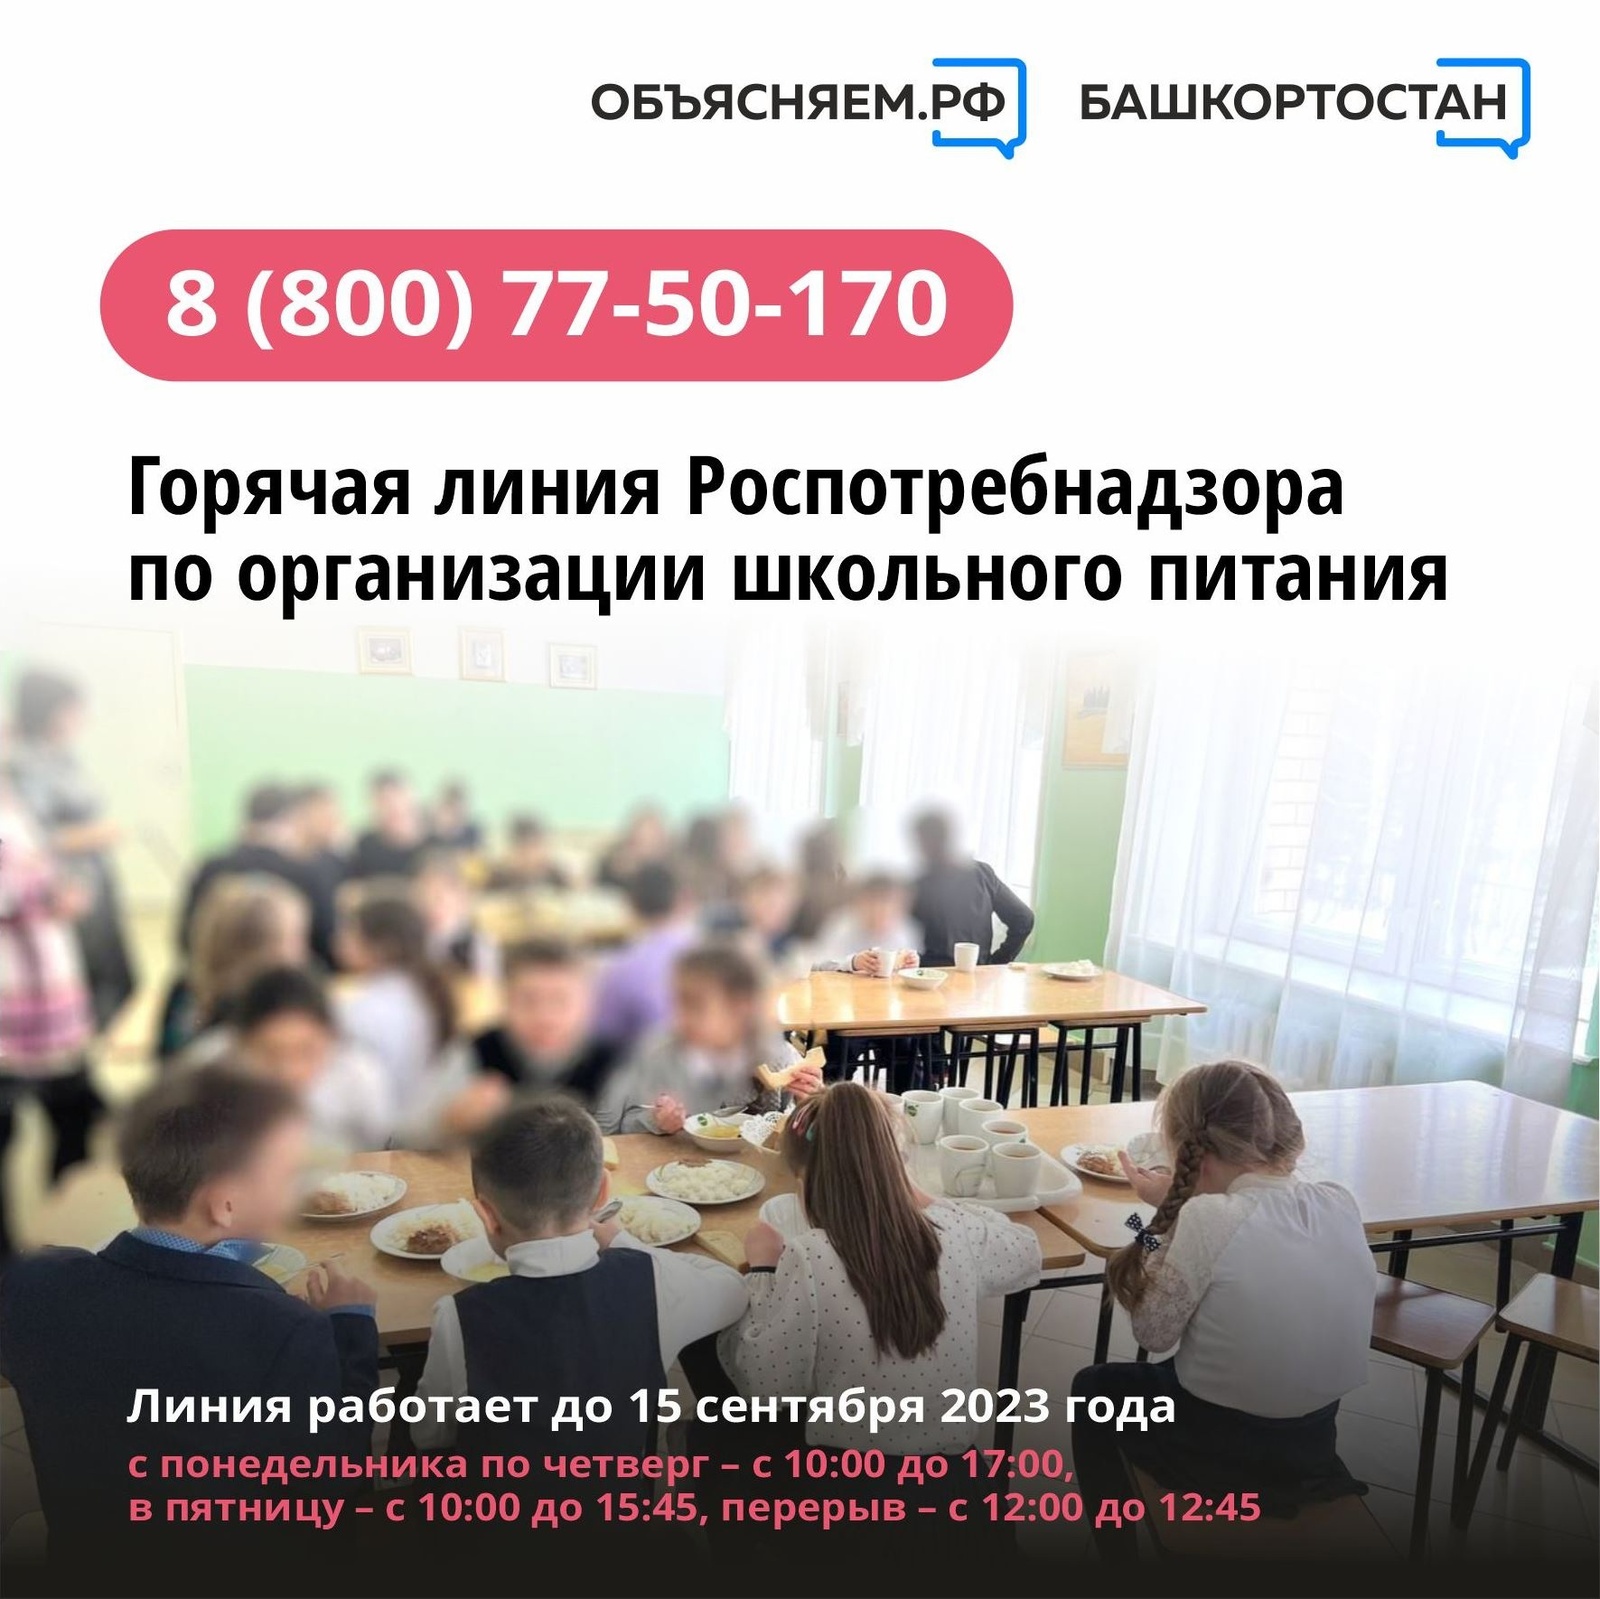 В Башкирии Роспотребнадзор открыл горячую линию для ответов на вопросы о школьном питании